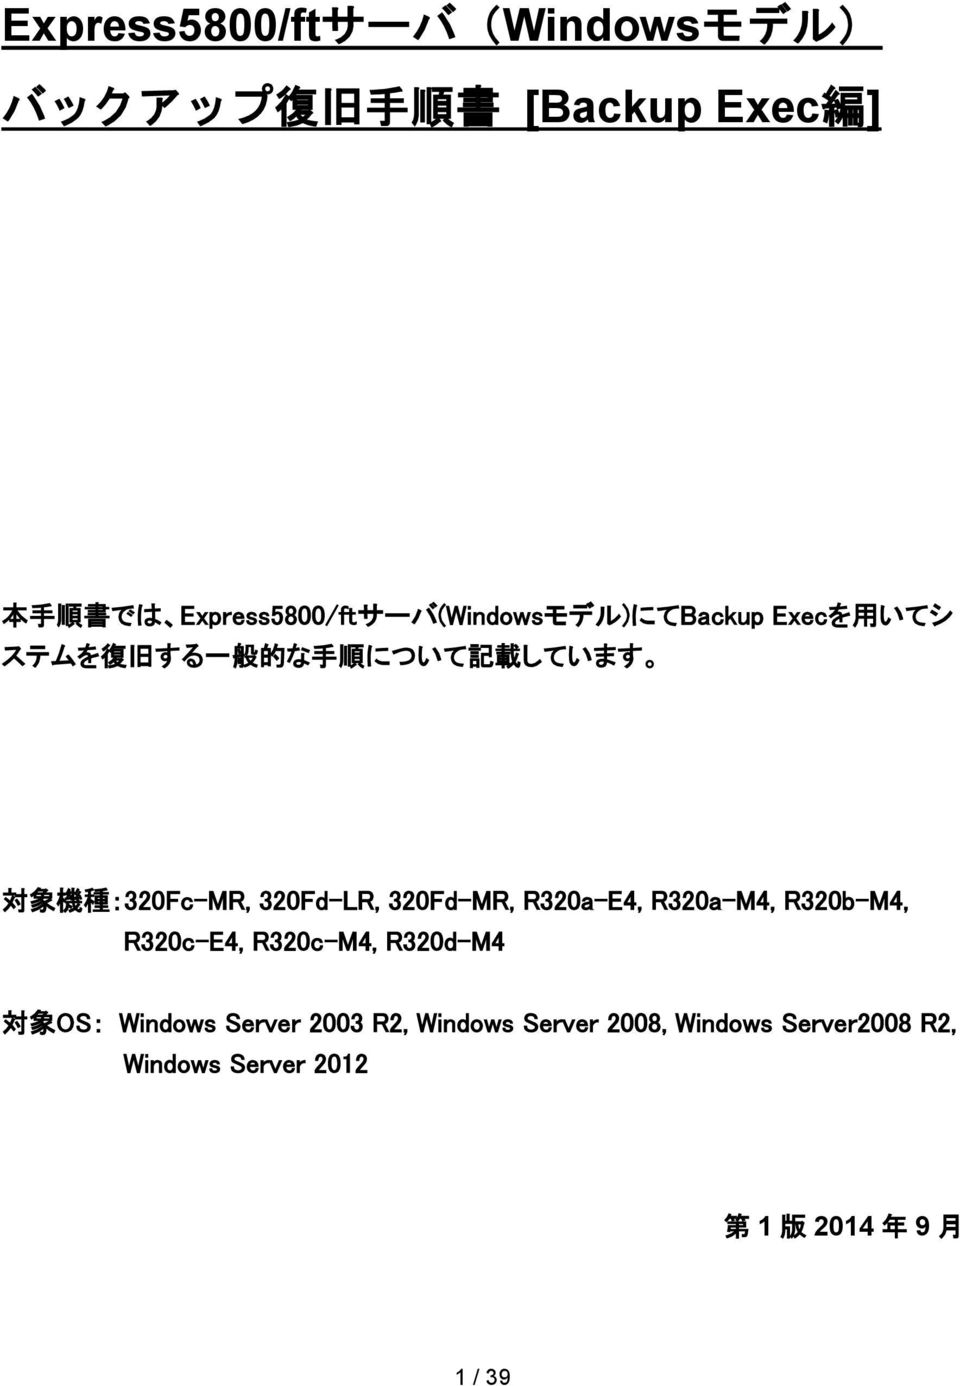 320Fd-MR, R320a-E4, R320a-M4, R320b-M4, R320c-E4, R320c-M4, R320d-M4 対象 OS: Windows Server